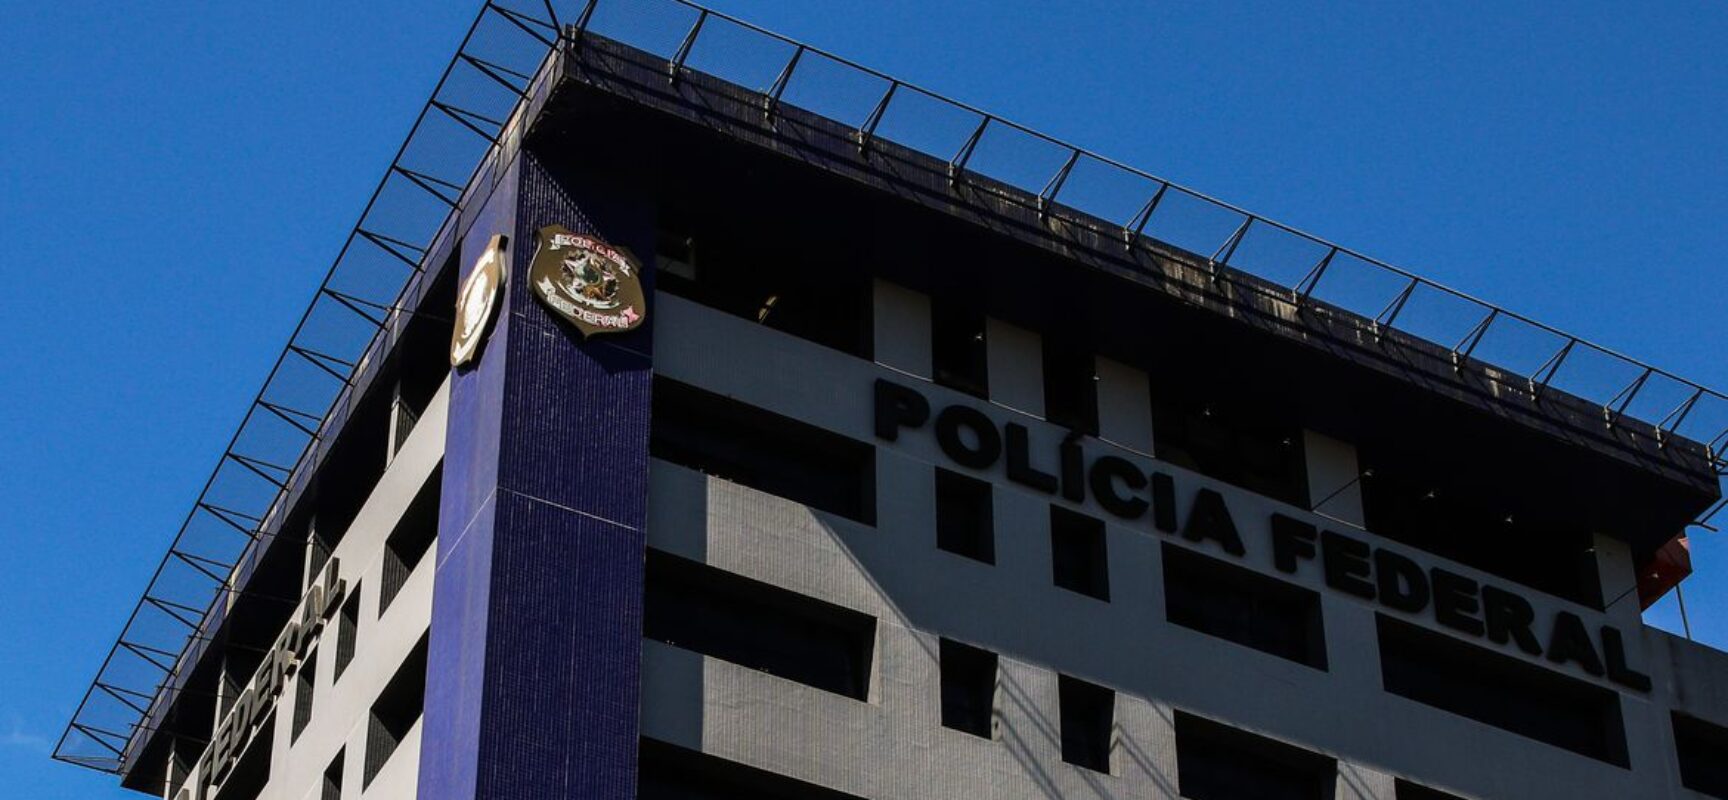 Polícia Federal faz operação contra fraudes na Caixa Econômica